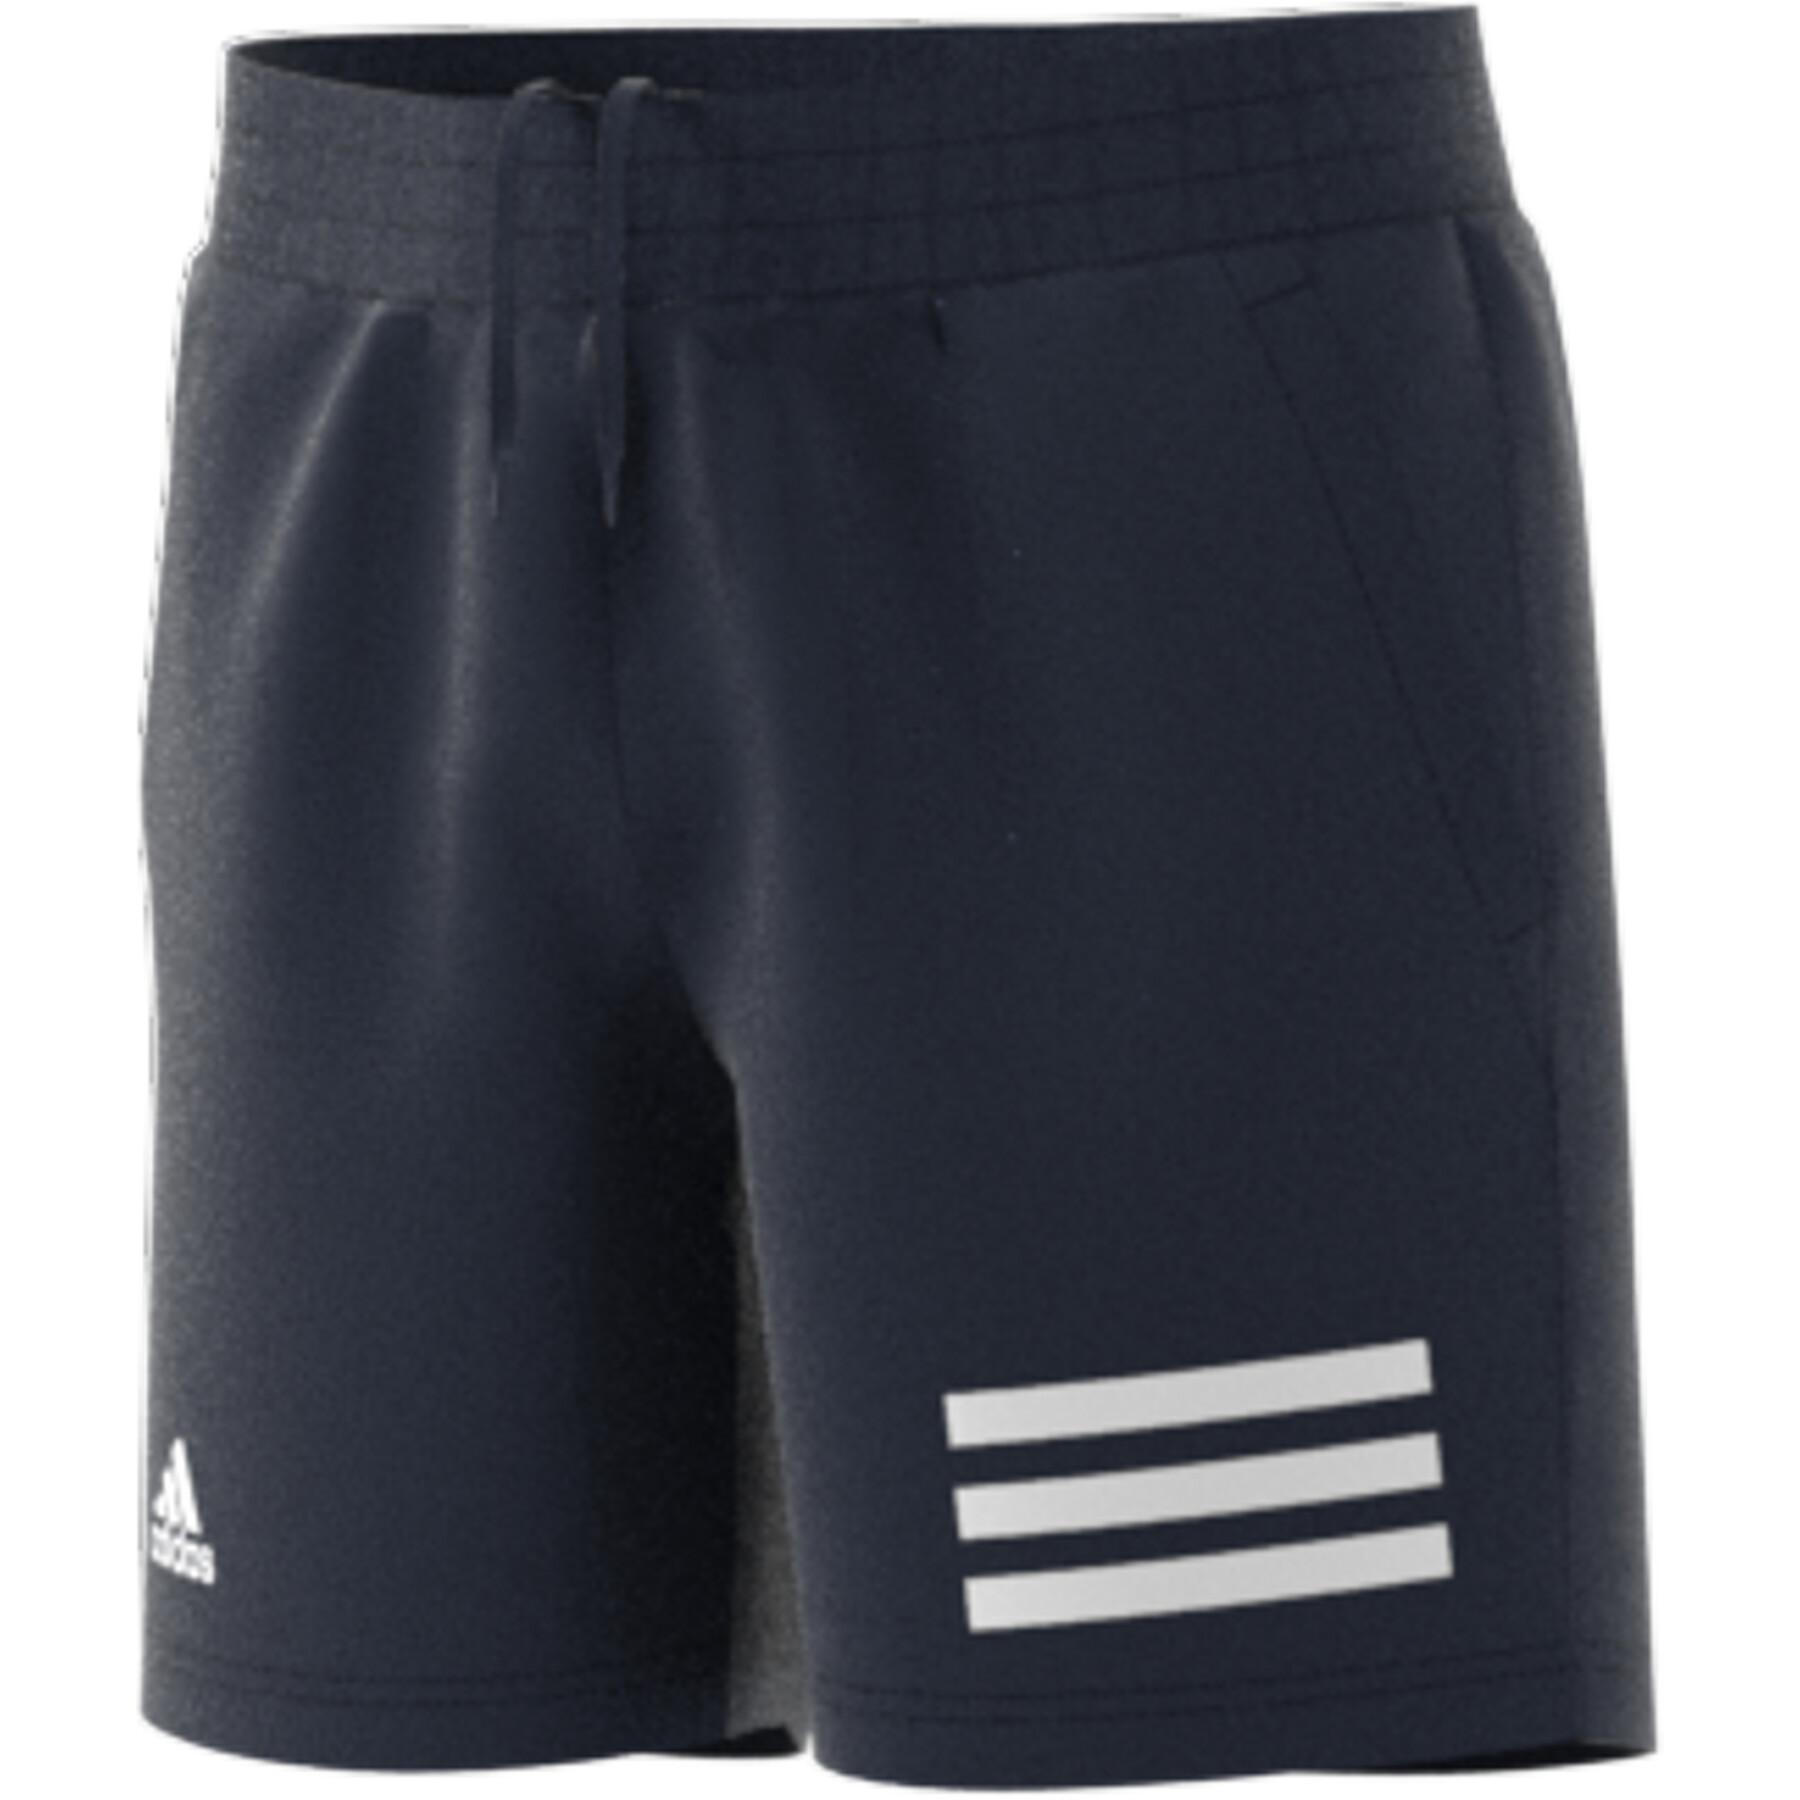 Kinder shorts adidas Club Tennis